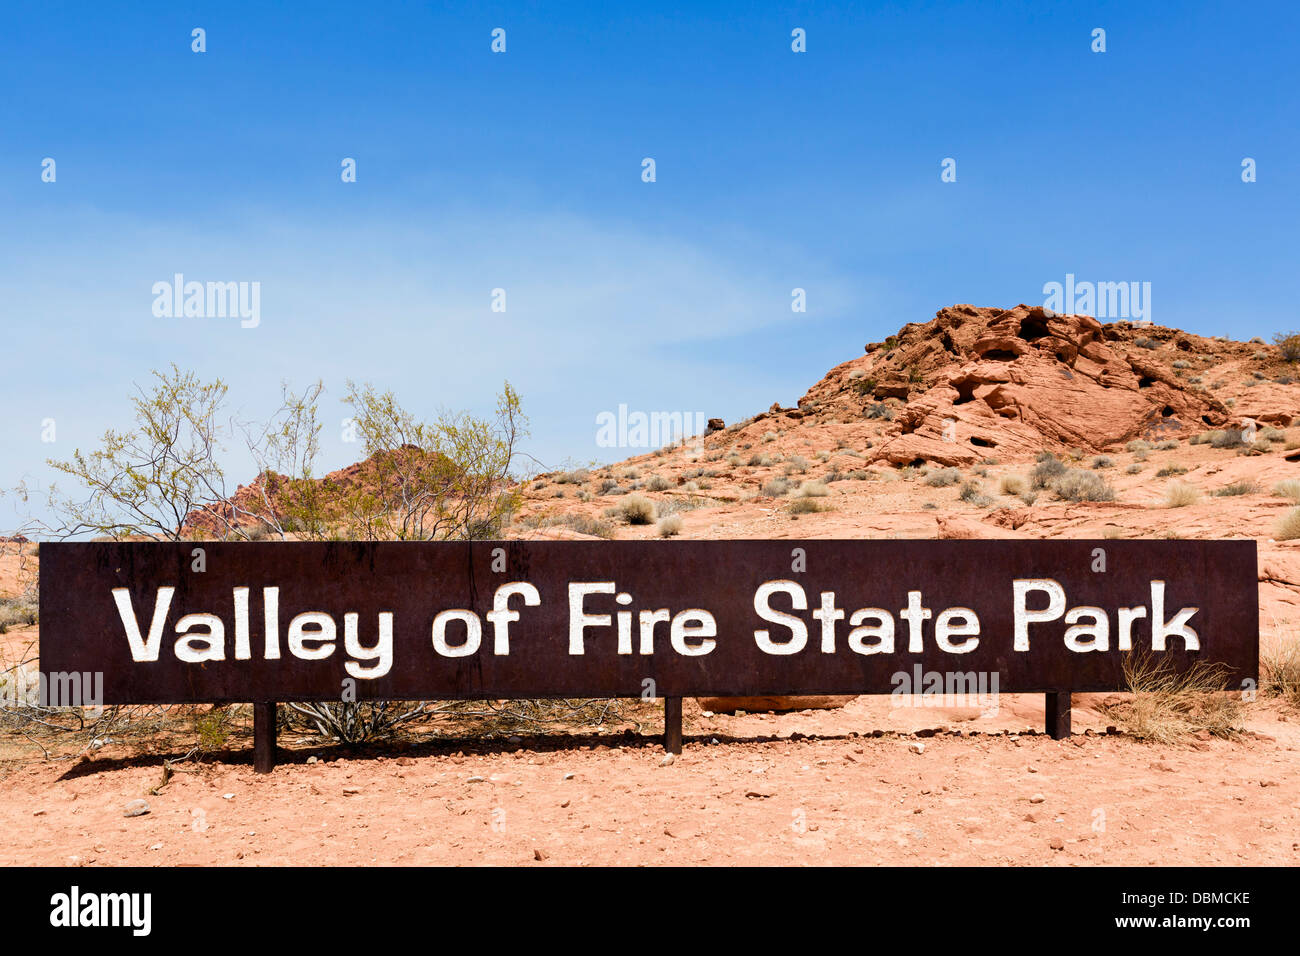 Segno di ingresso per il Parco della Valle di Fire State, a nord di Las Vegas, Nevada, STATI UNITI D'AMERICA Foto Stock